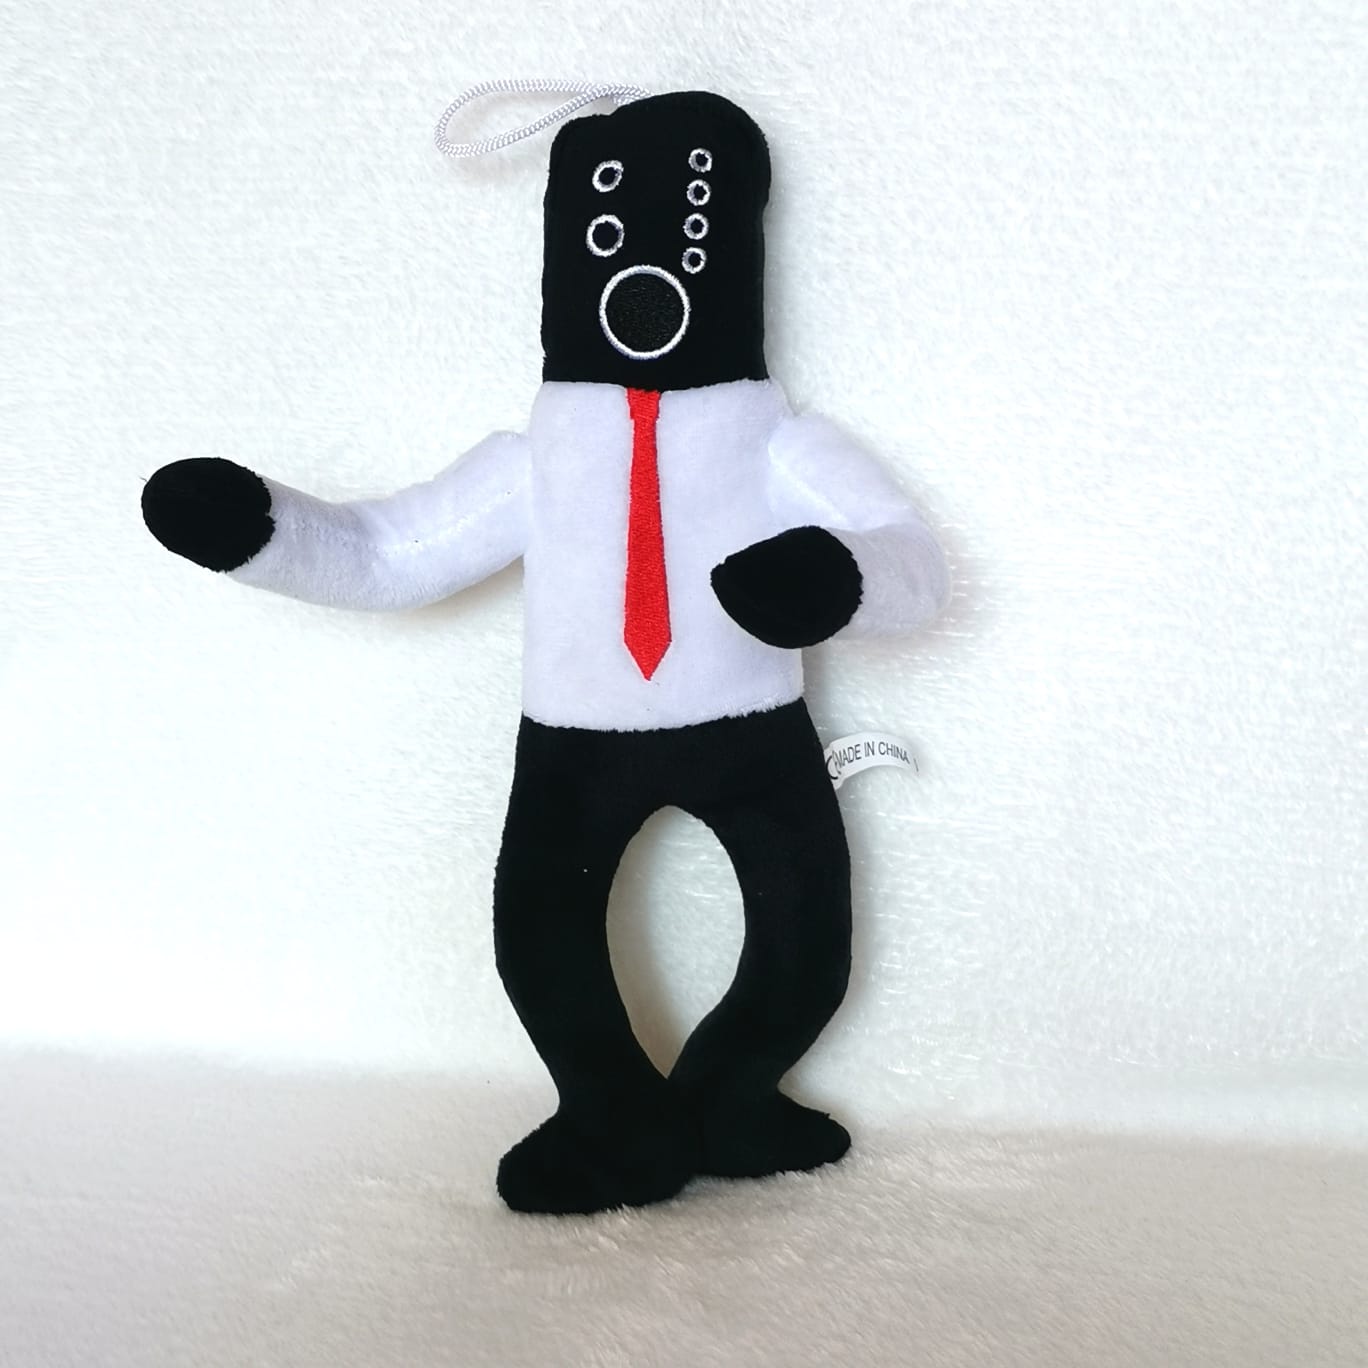 Игрушка Ermelenatoys Большой Агент-Колонка, герой сериала Skibidi toilet, белый, черный